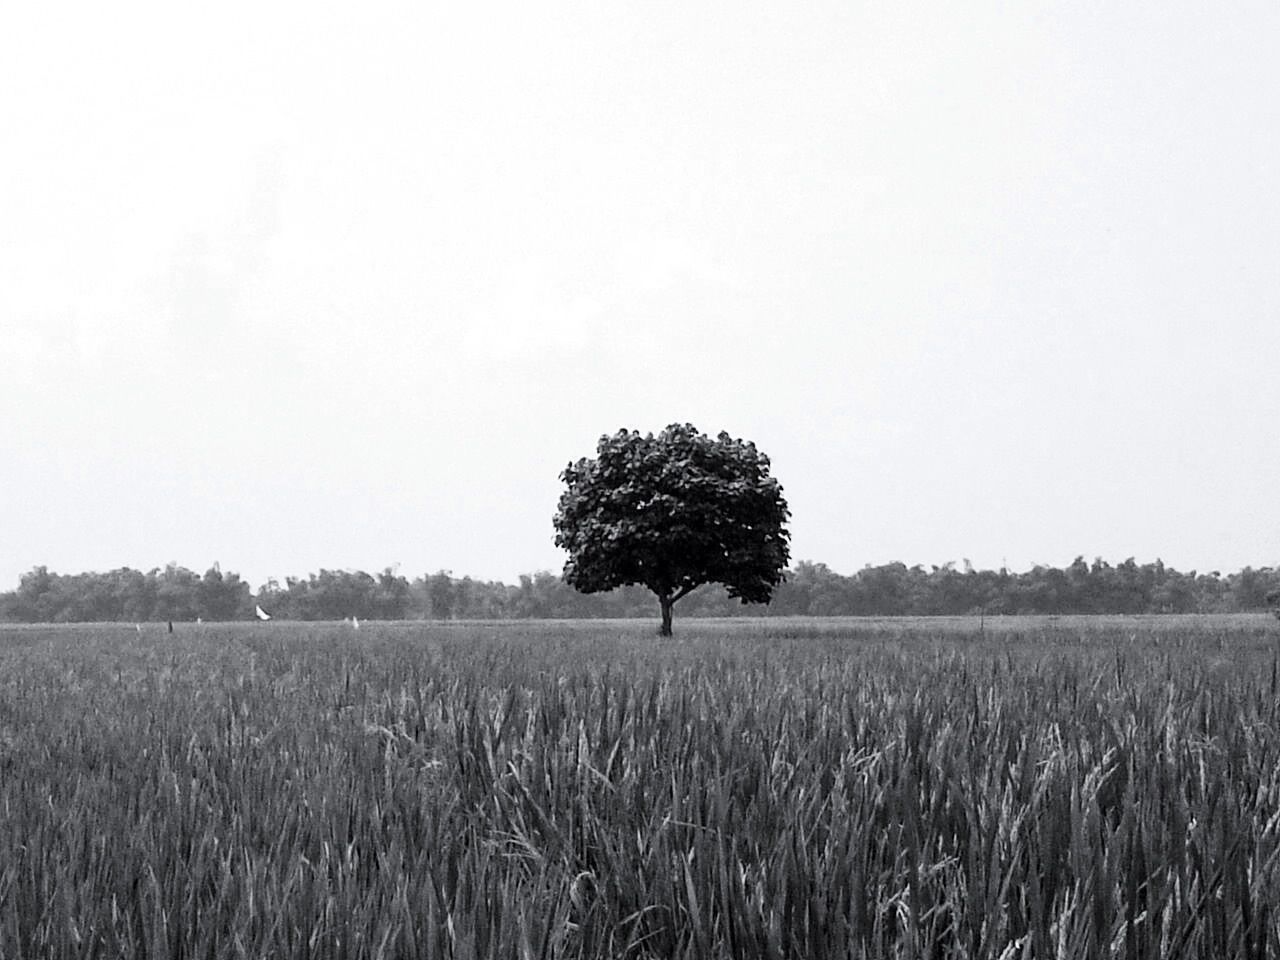 Tree growing in rural field against clear sky